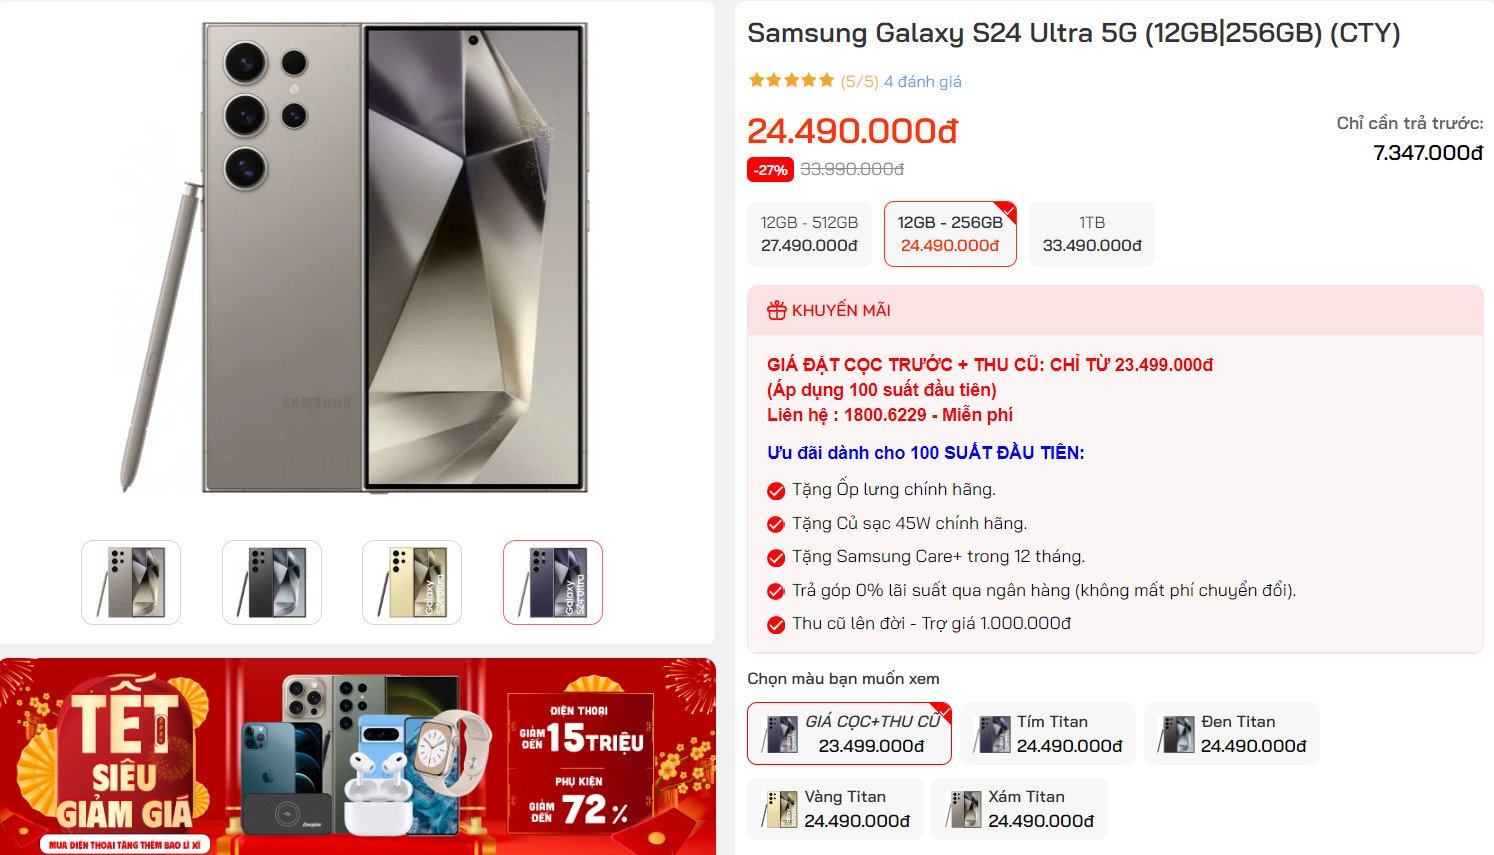 Lên đời Galaxy S24 Ultra chỉ từ 8.5 triệu đồng, sức mua tăng chóng mặt - 1